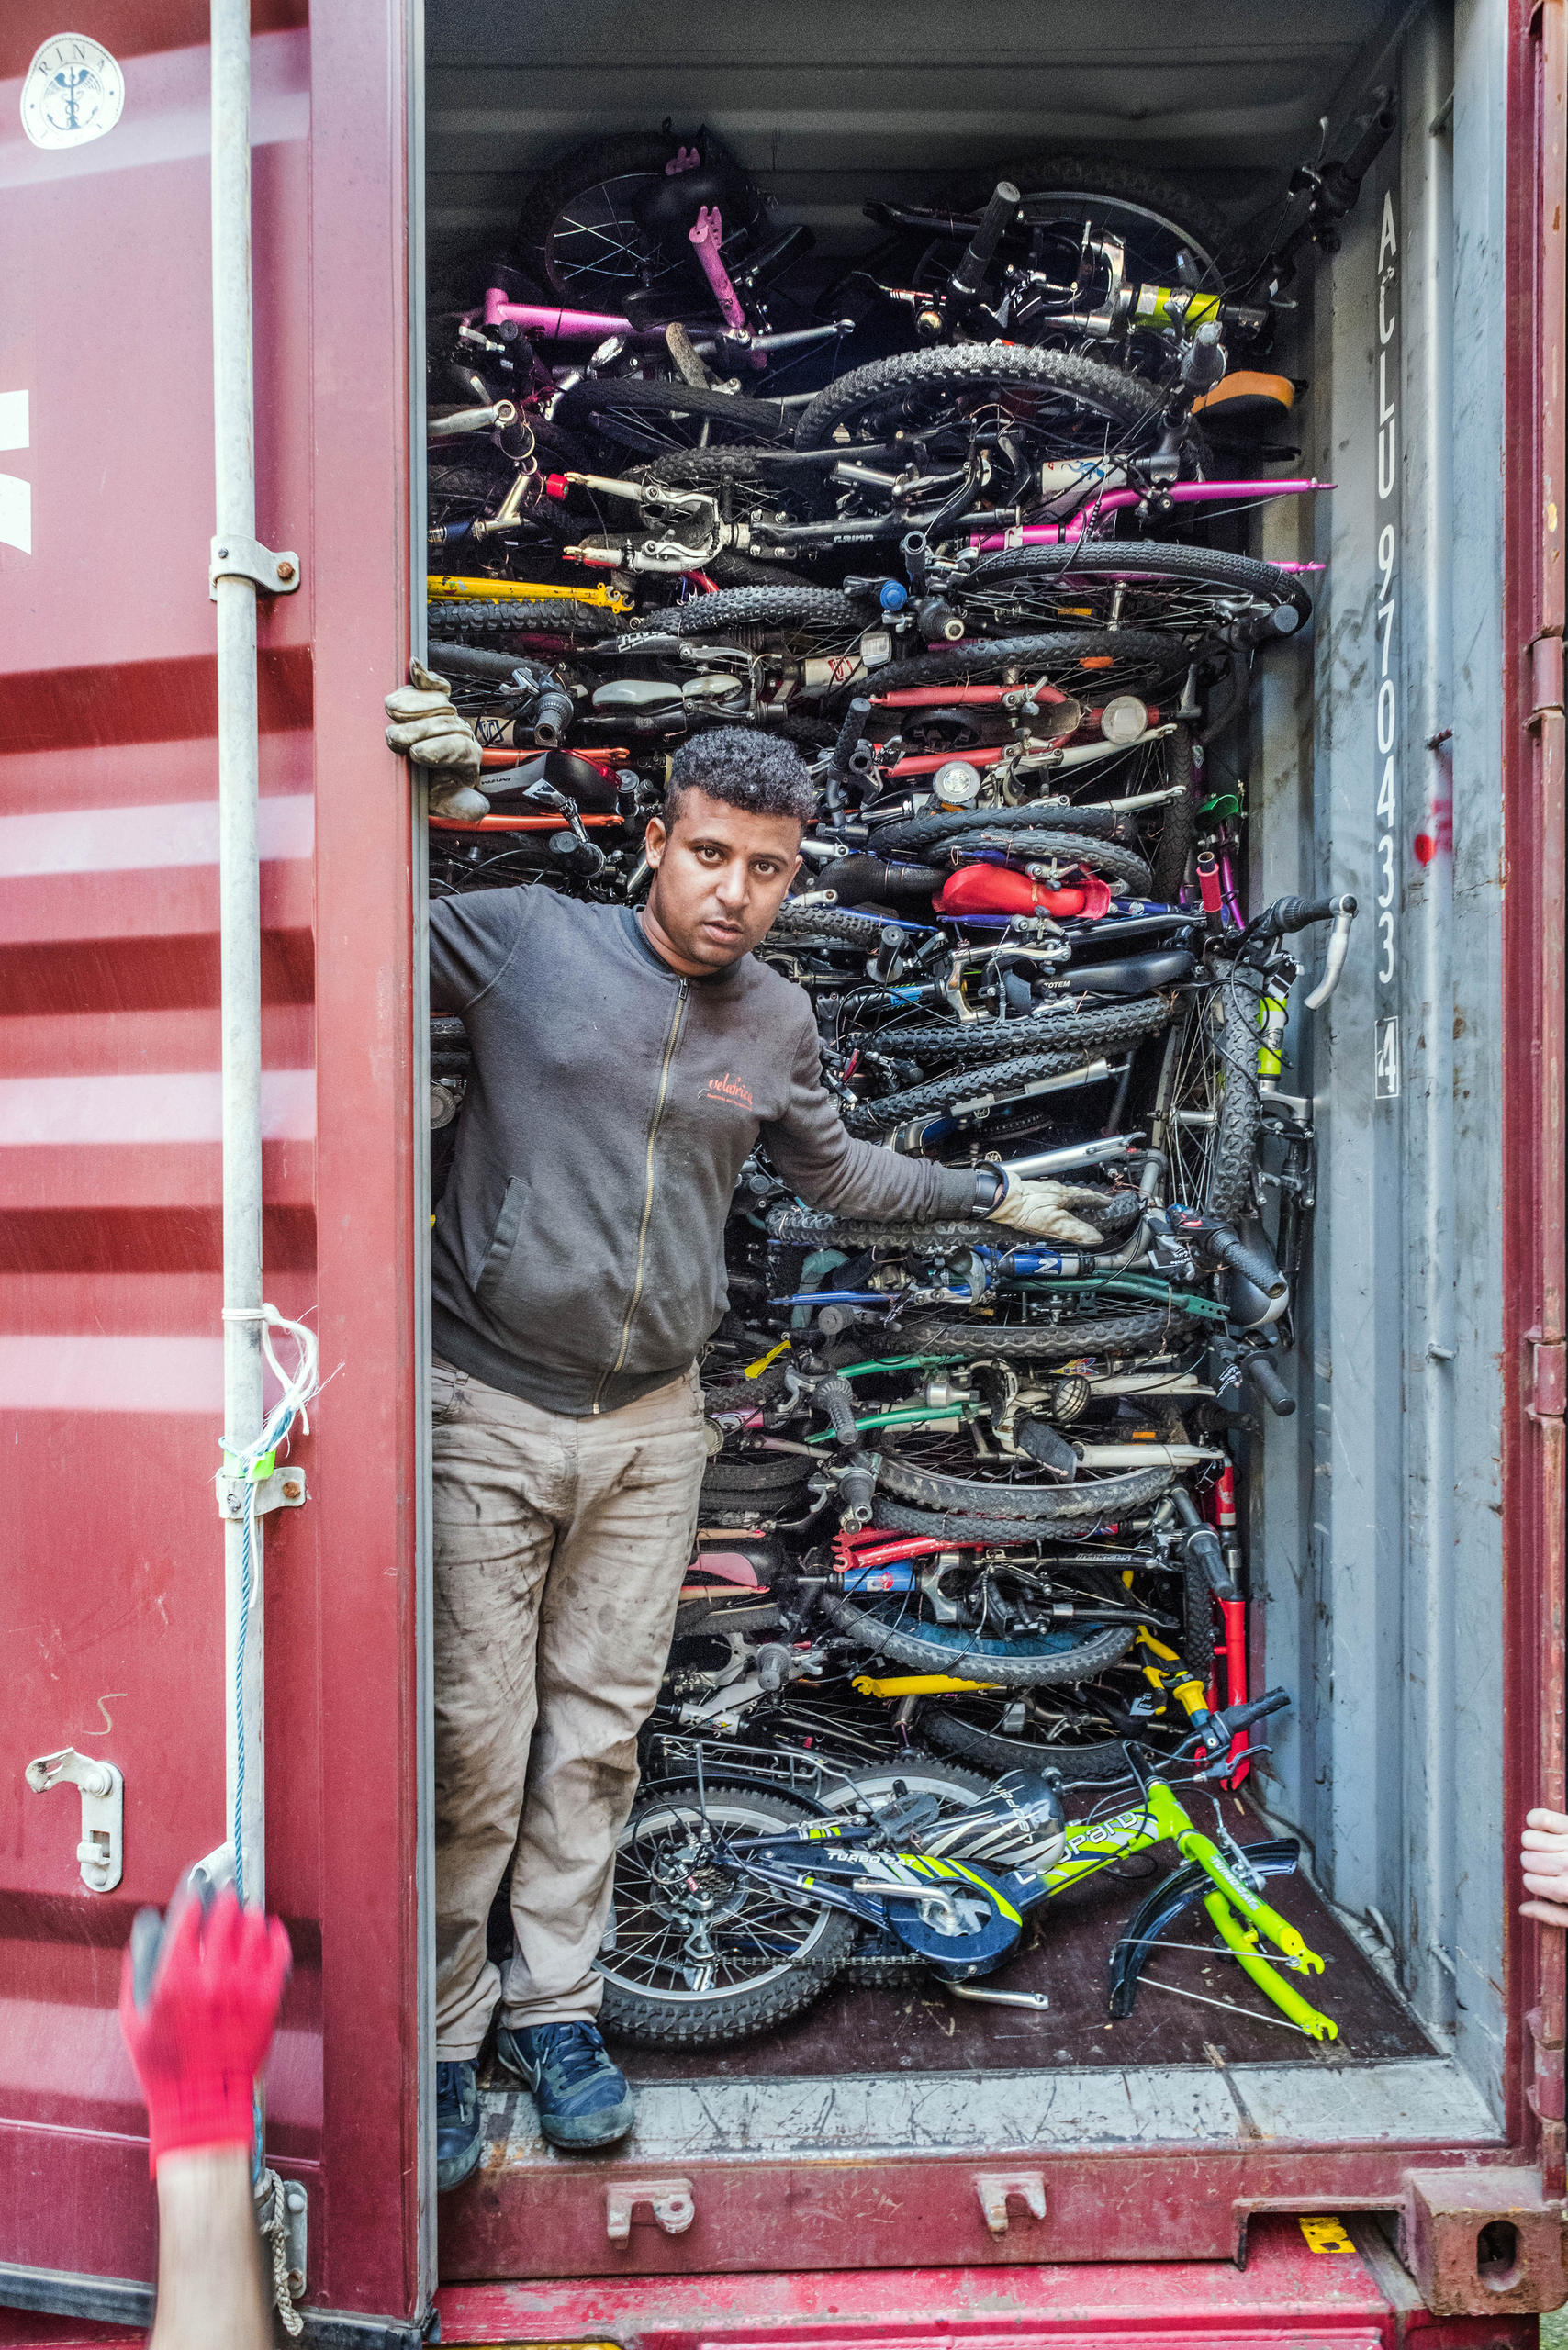 Un uomo davanti alle bici in un container.